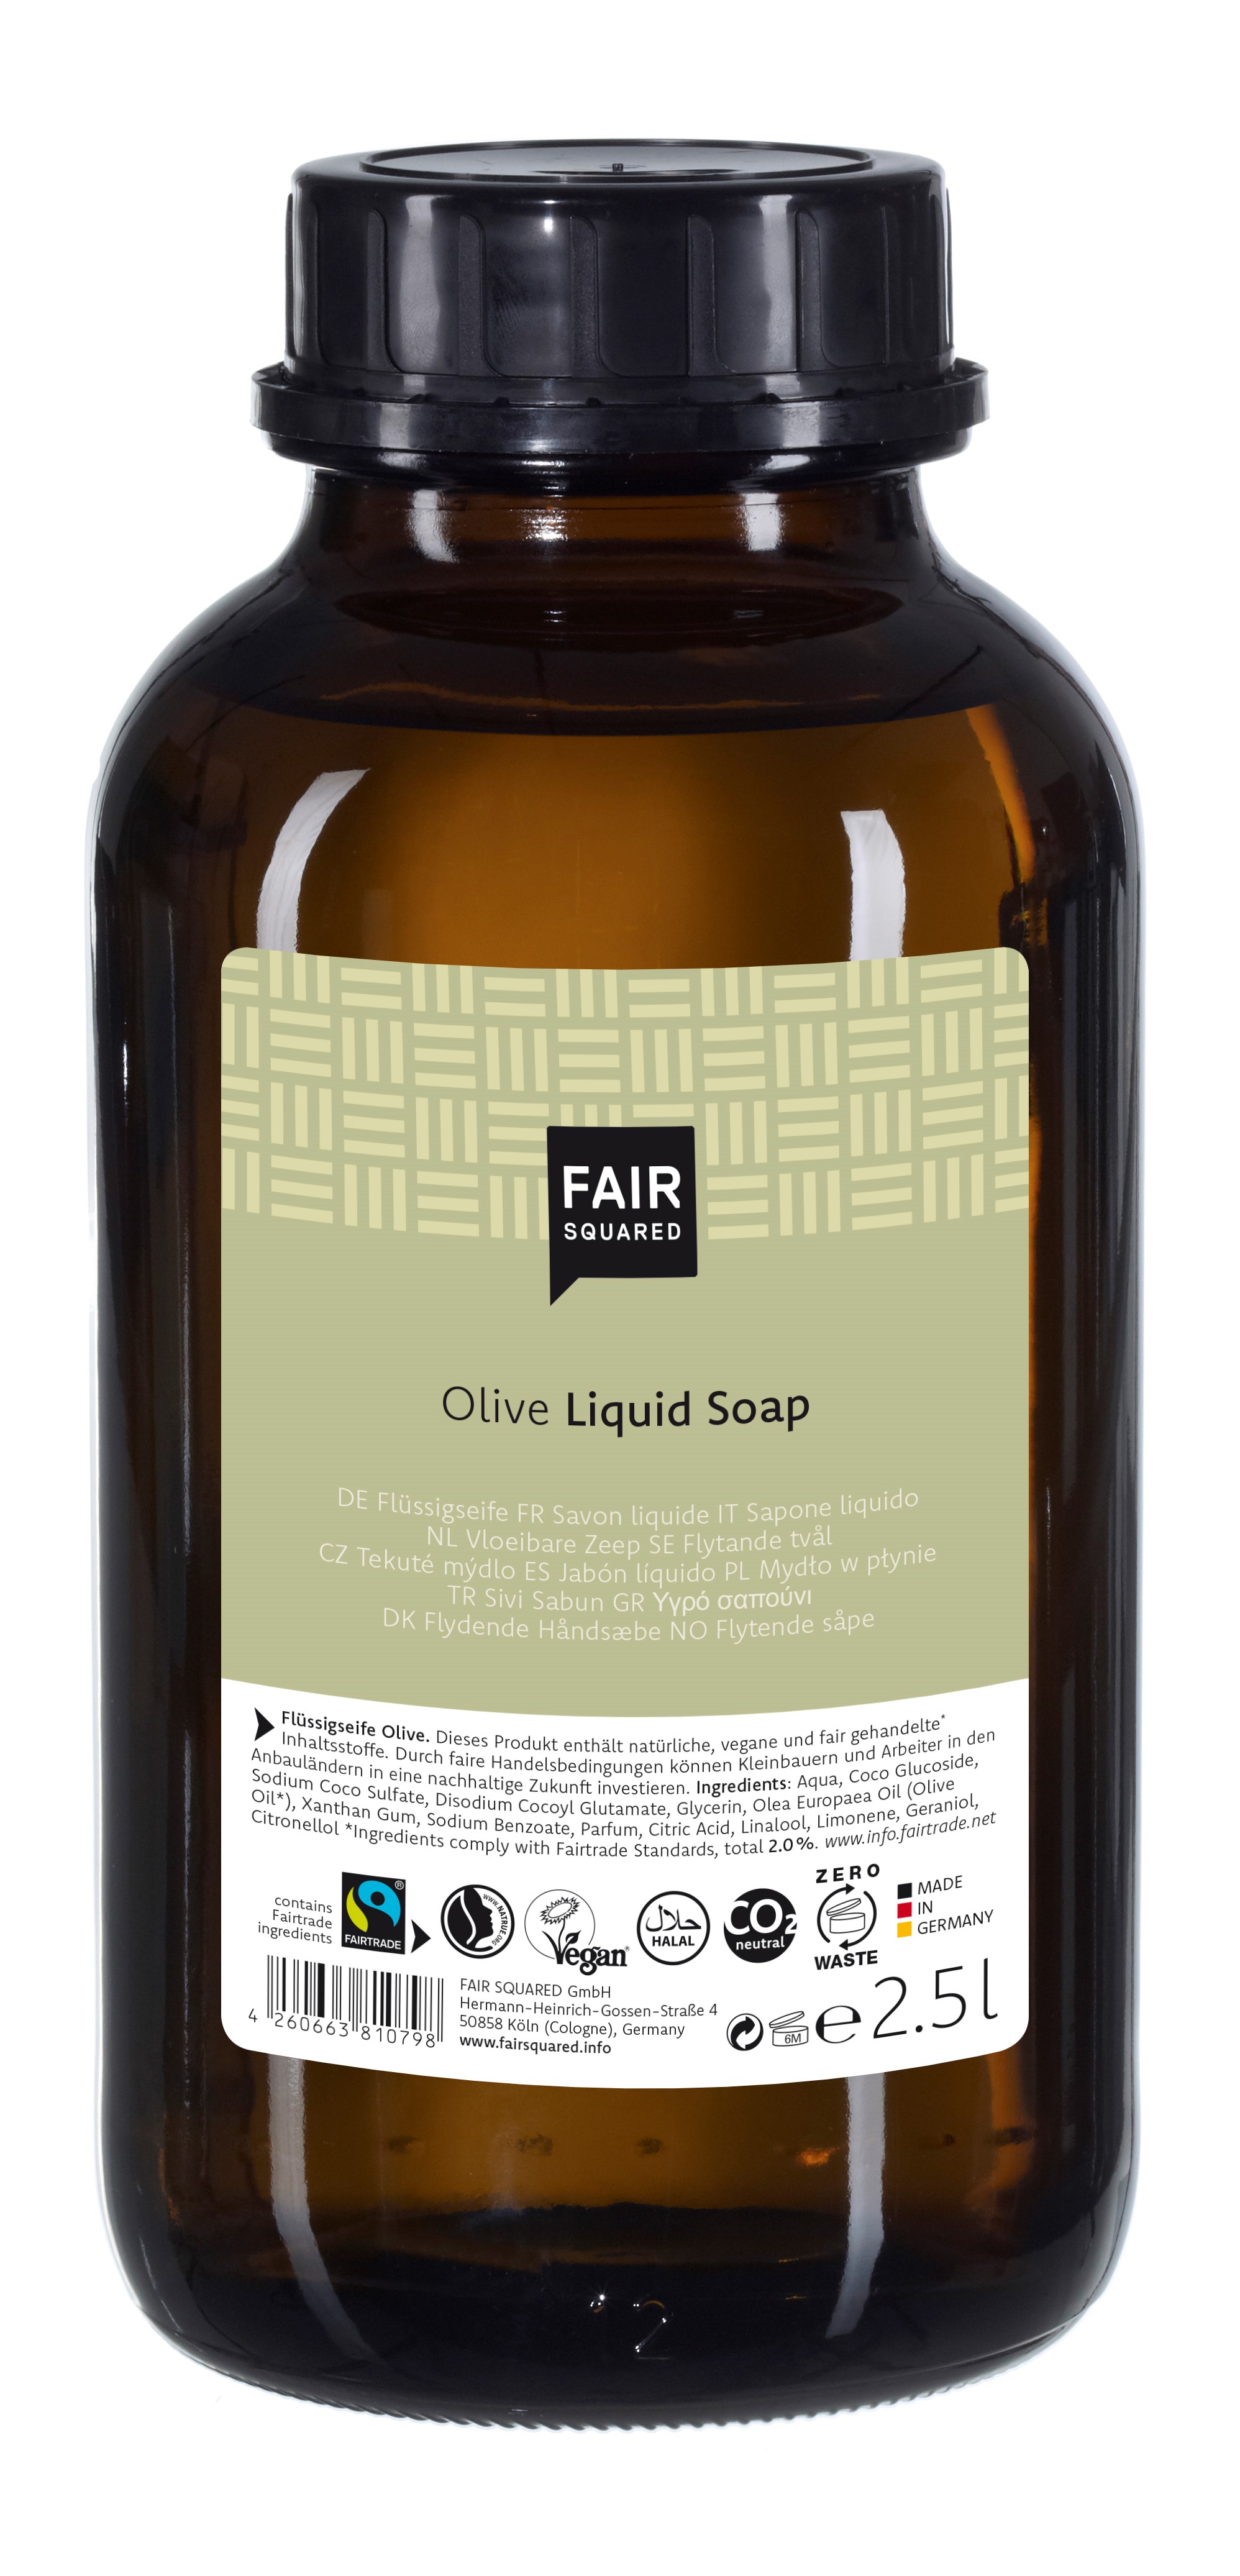 FAIR SQUARED - Storkøb 2,5 Liter Økologisk Håndsæbe med Olive